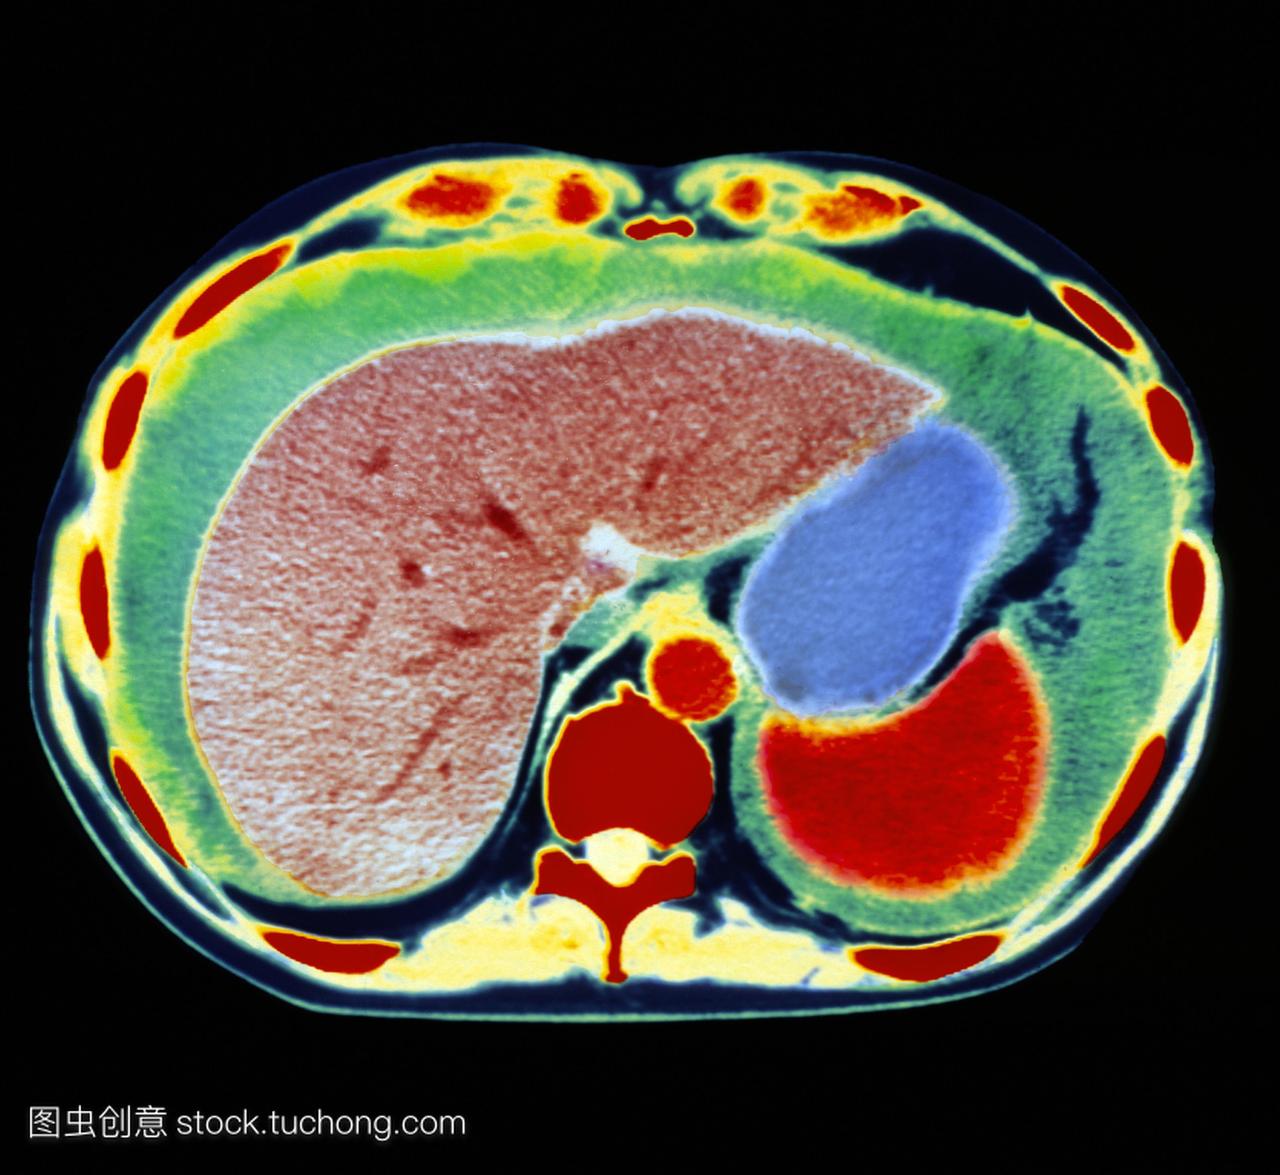 ct通过腹部的轴向切片扫描,显示腹水。左边是肝